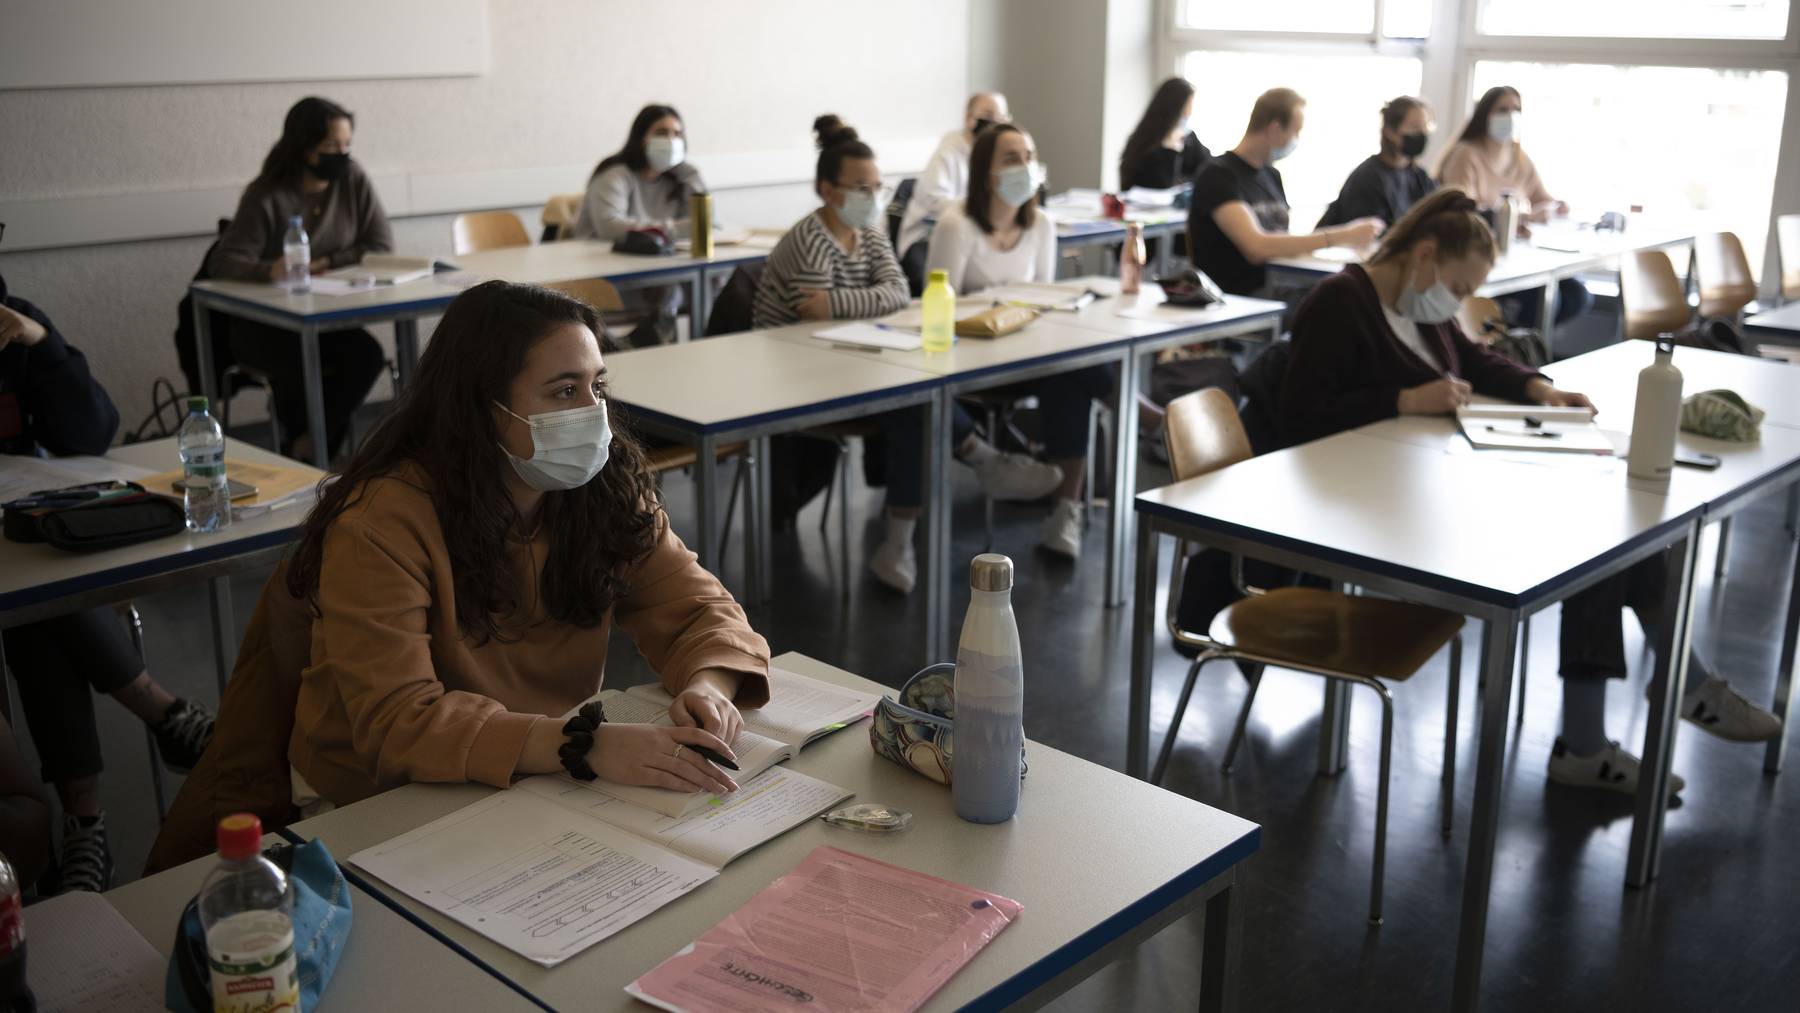 Schueler und Schuelerinnen der Klasse 21-M2.03 der Wirtschaftsschule KV Zuerich folgen Maske tragend dem Geschichtsunterricht, fotografiert am 25. Maerz 2021 in Zuerich.